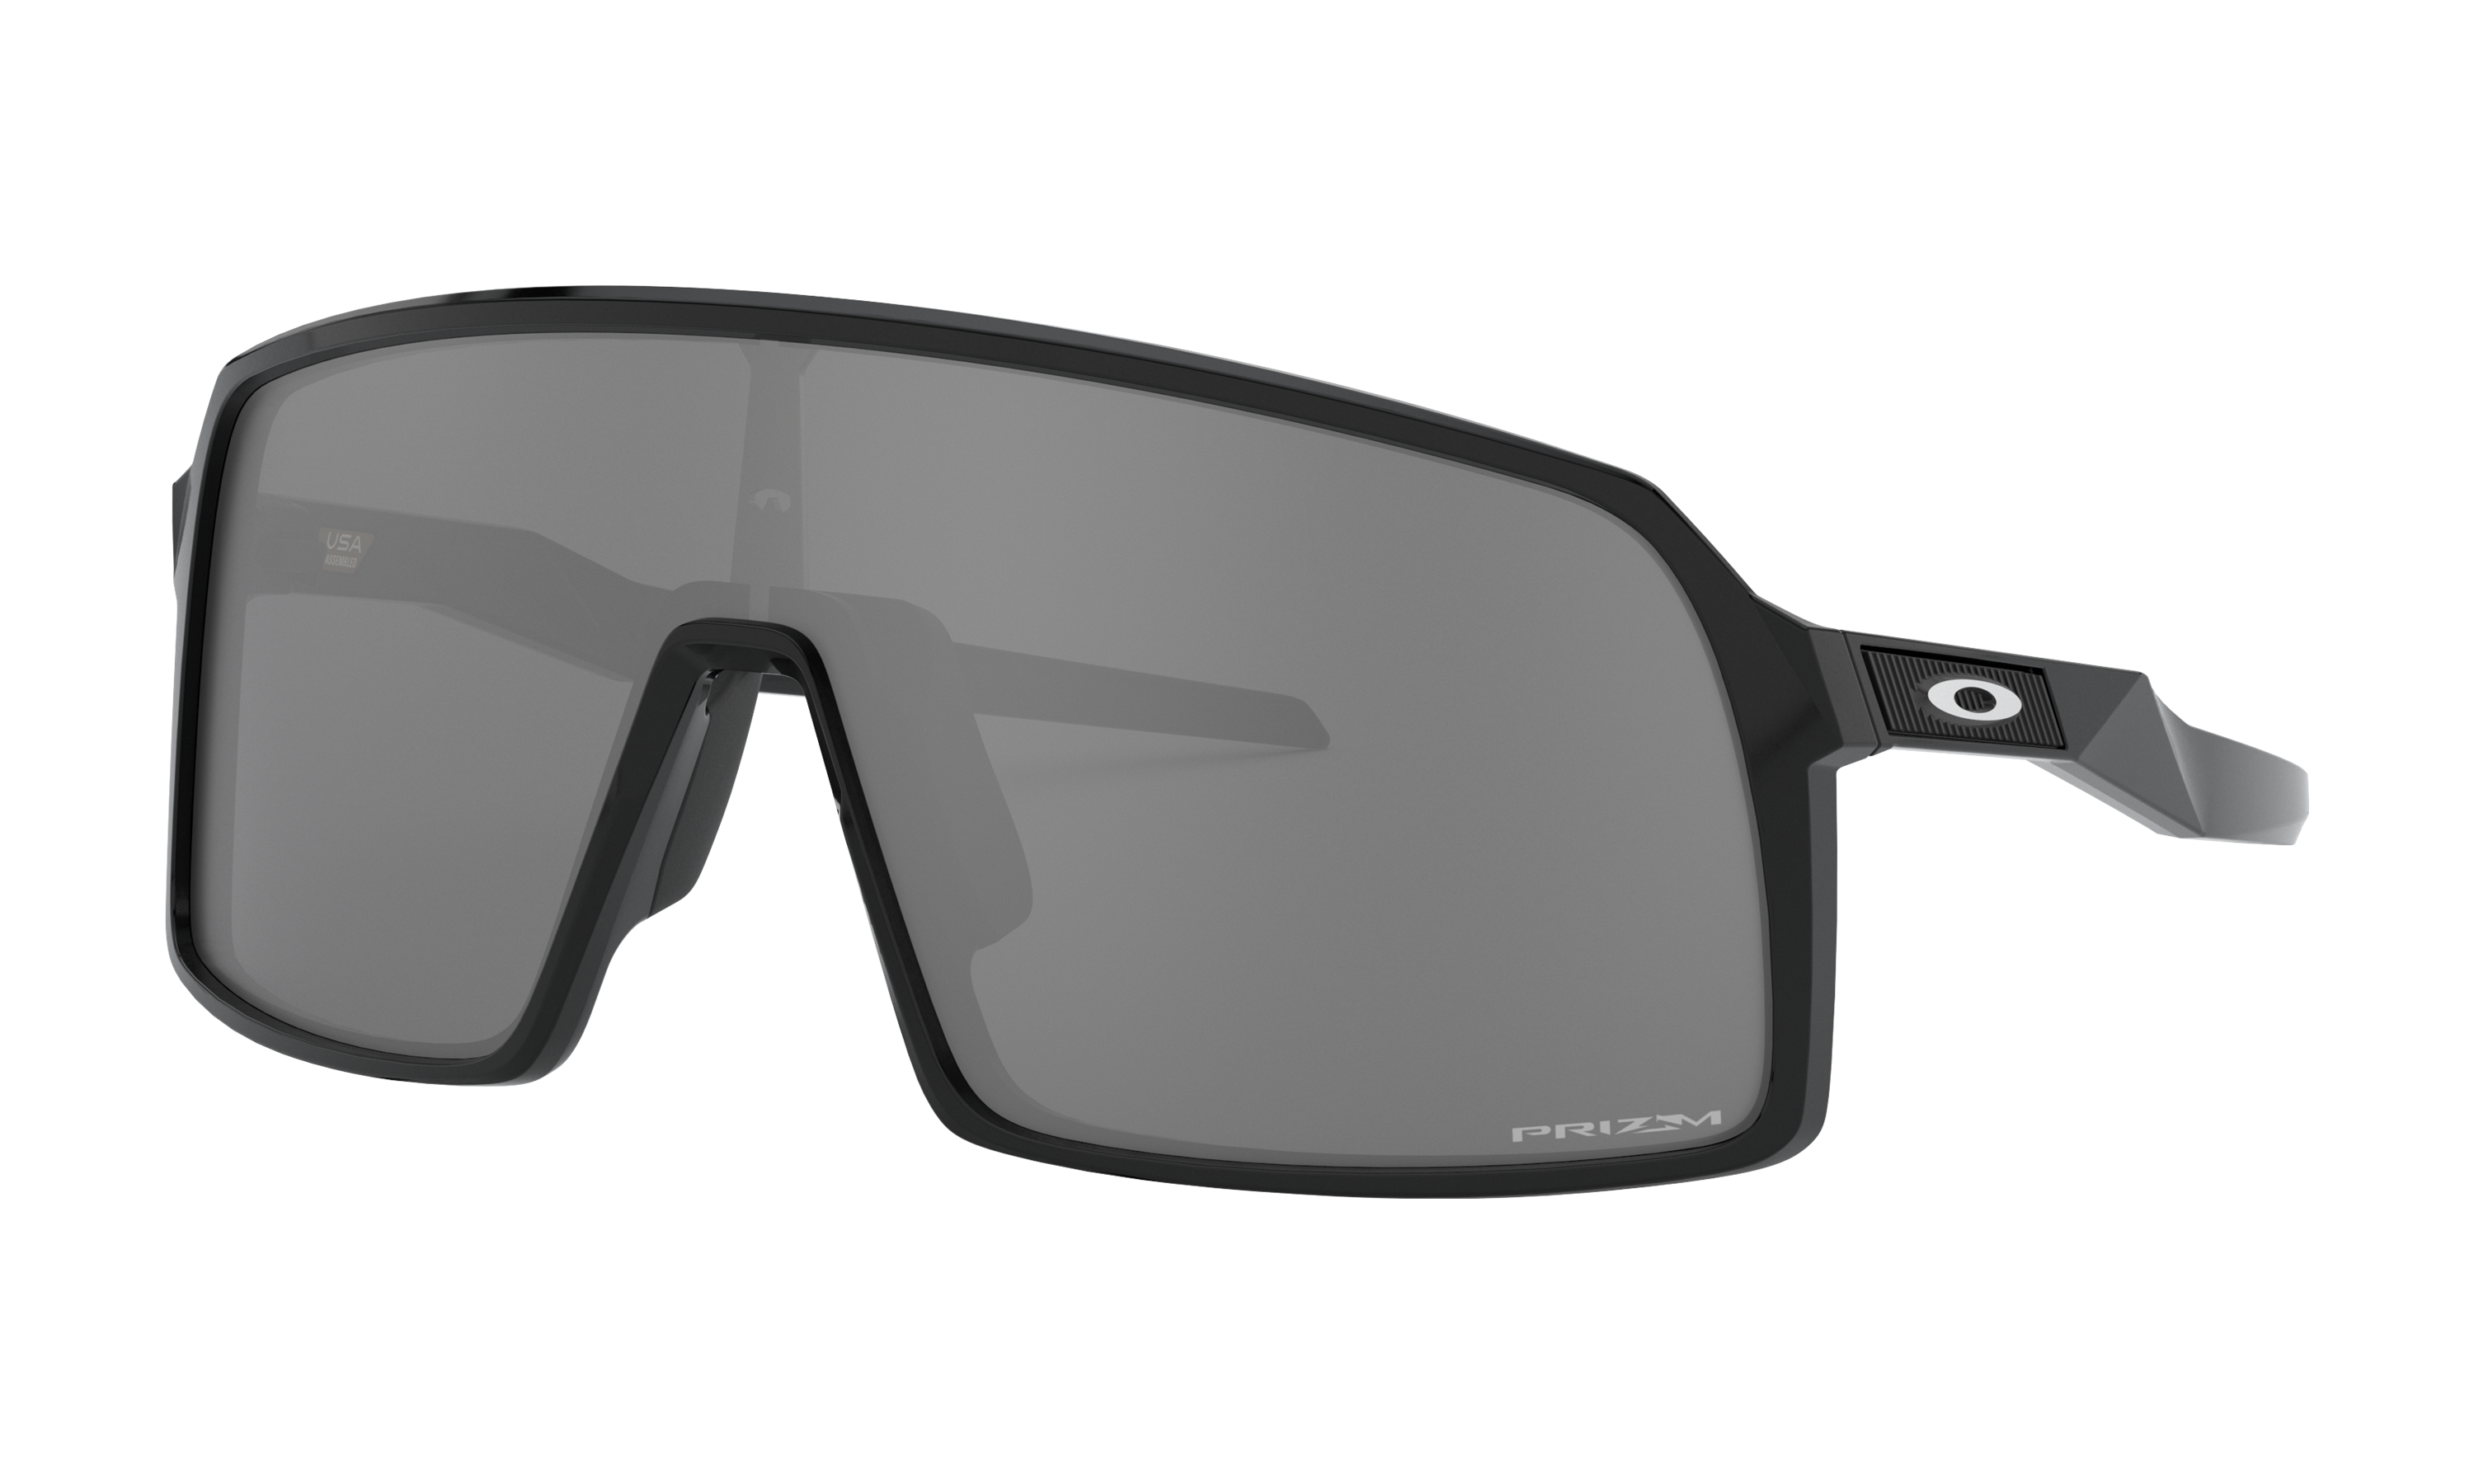 black oakley sunglasses